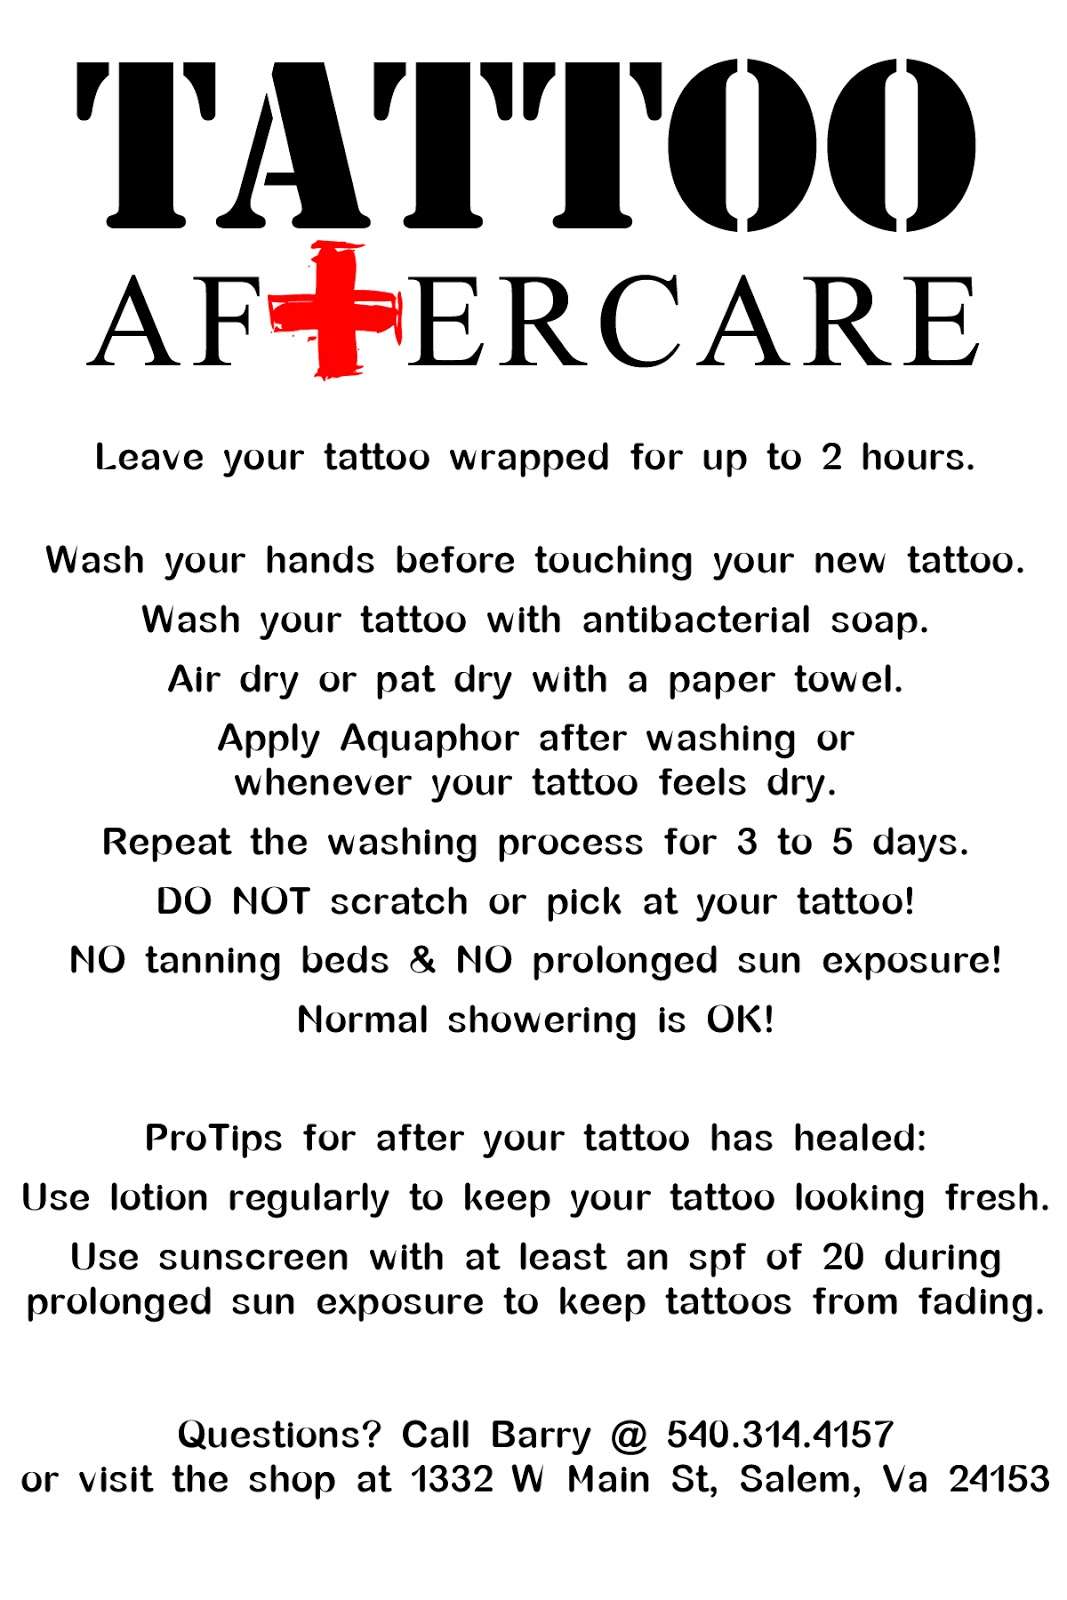 denemedeneme: Tattoo Aftercare